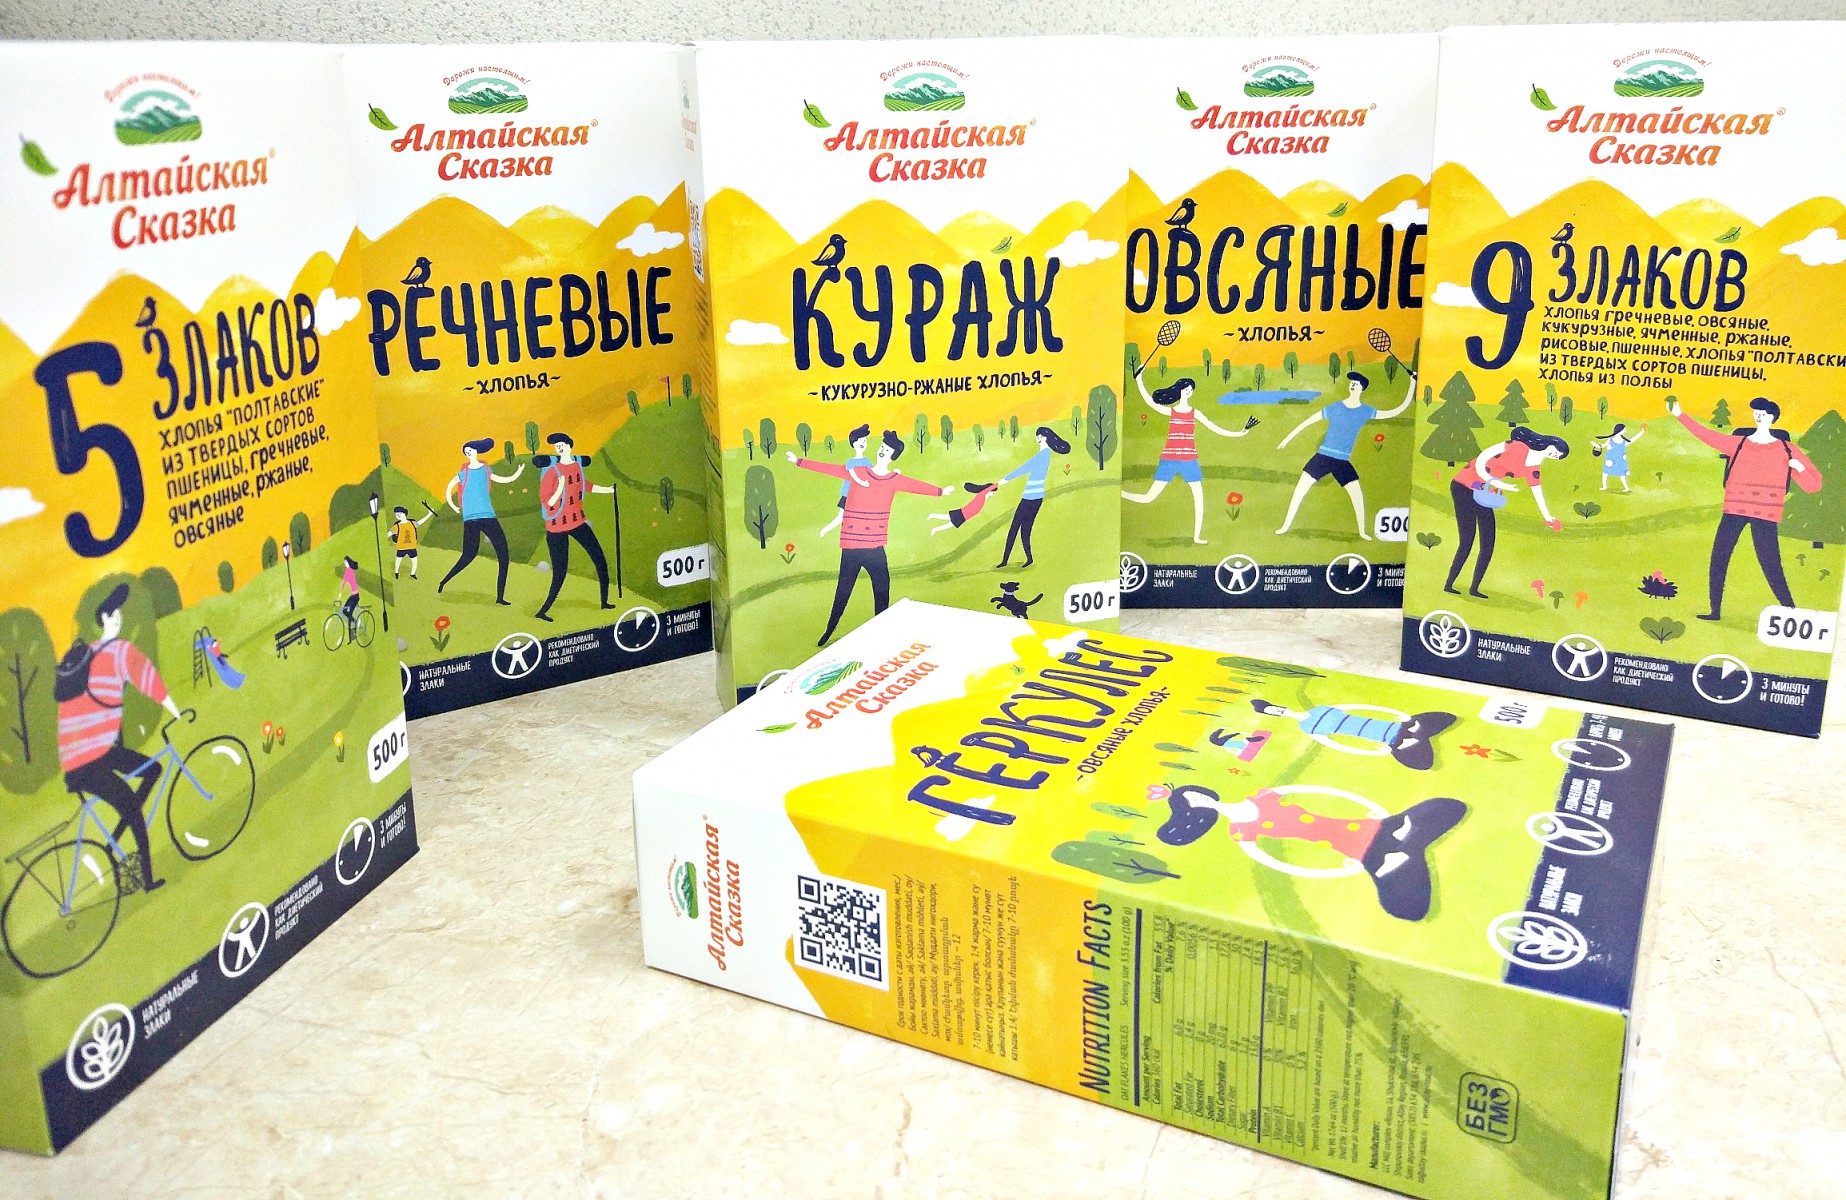 Крупнейший алтайский зернопереработчик выпустил на рынок линейку хлопьев в новом дизайне — новости, предприятий, Алтайские товары